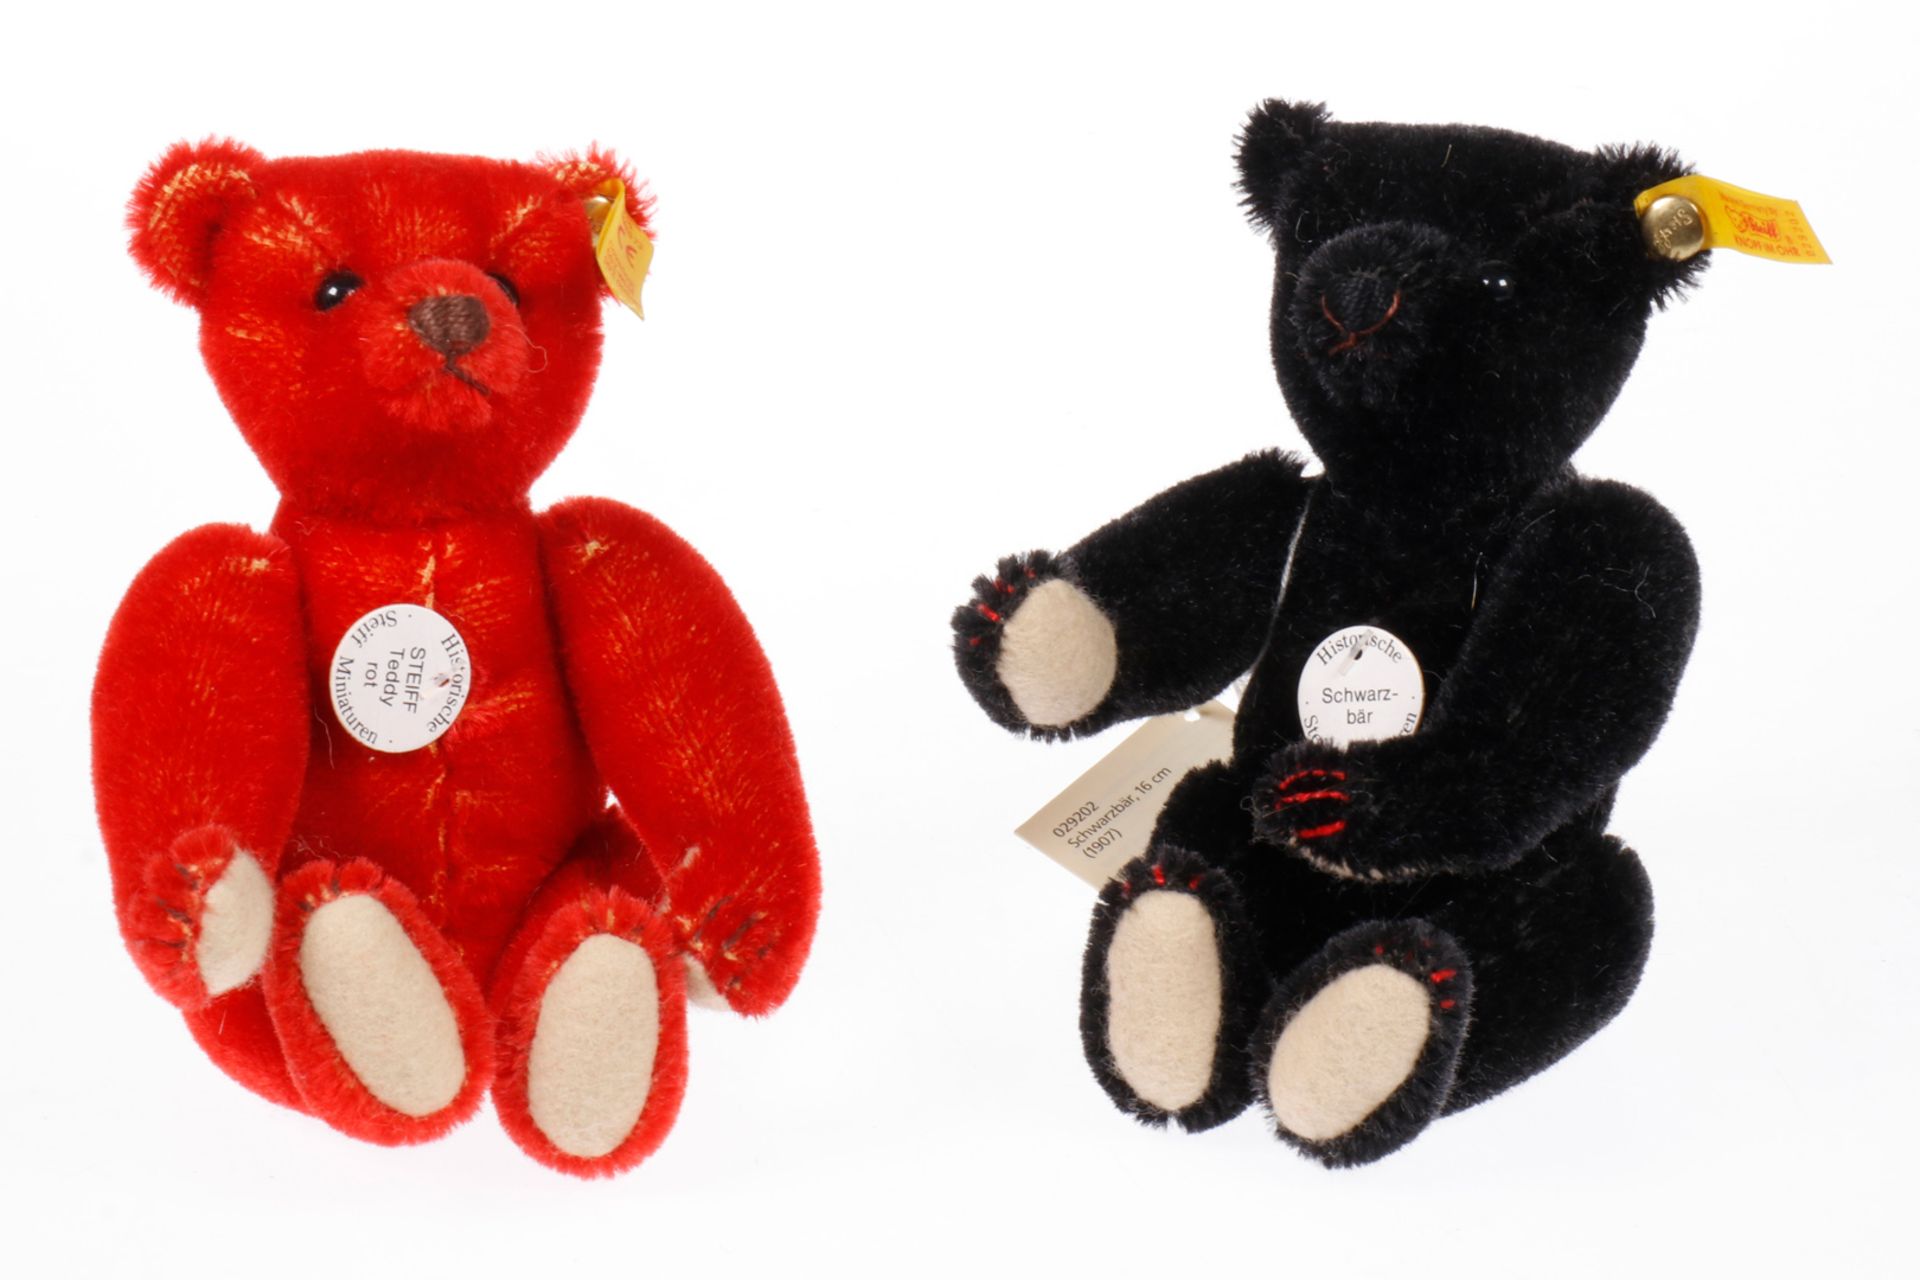 2 Steiff Replik Miniaturbären ”1908”, rot und schwarz, H 18, Z 1-2